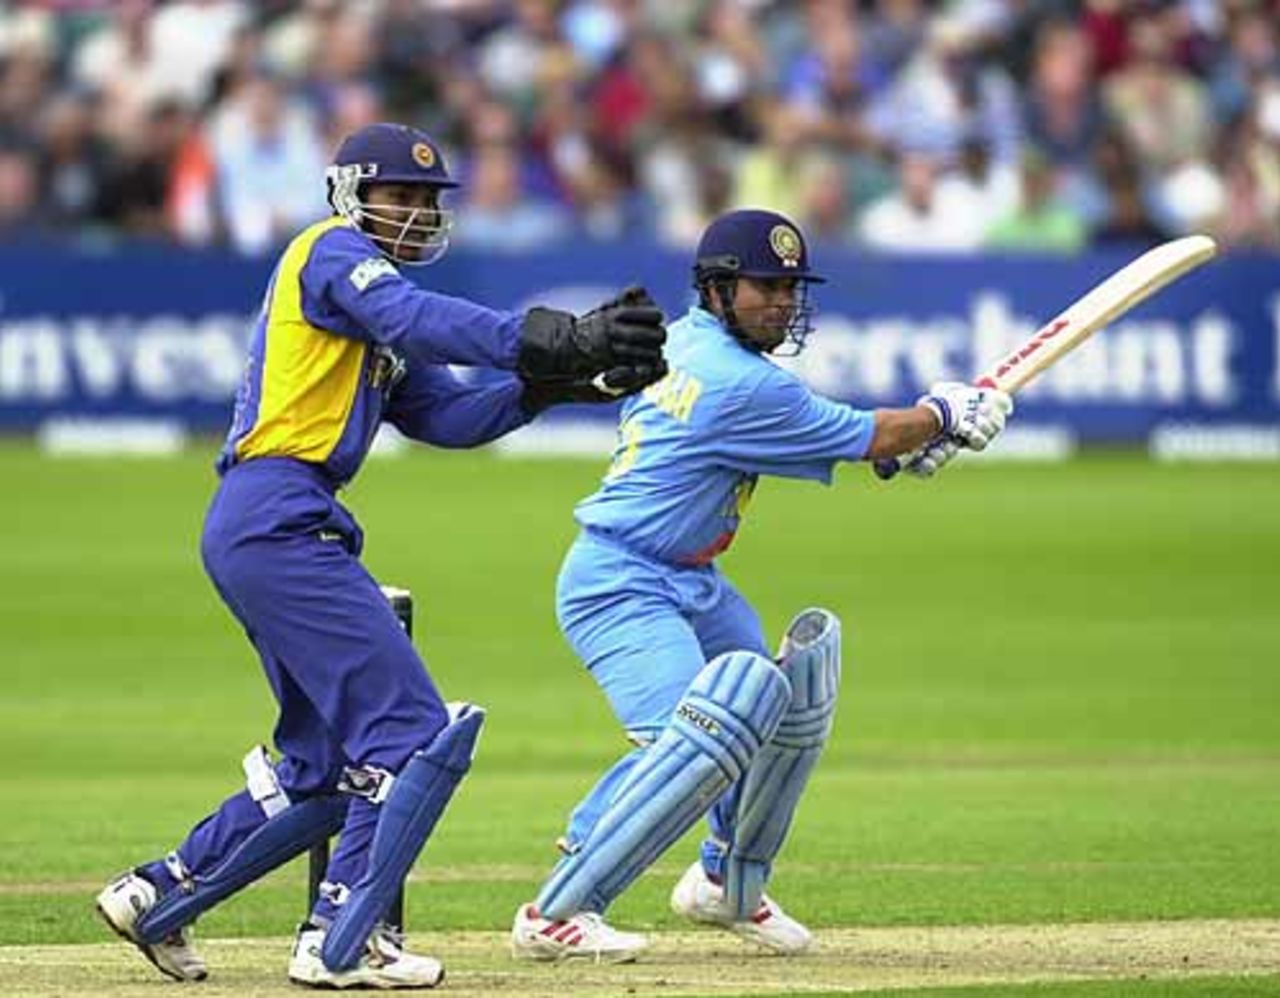 A lovely cut shot from Tendulkar at Bristol, India v Sri Lanka at Bristol 11th Jul 2002